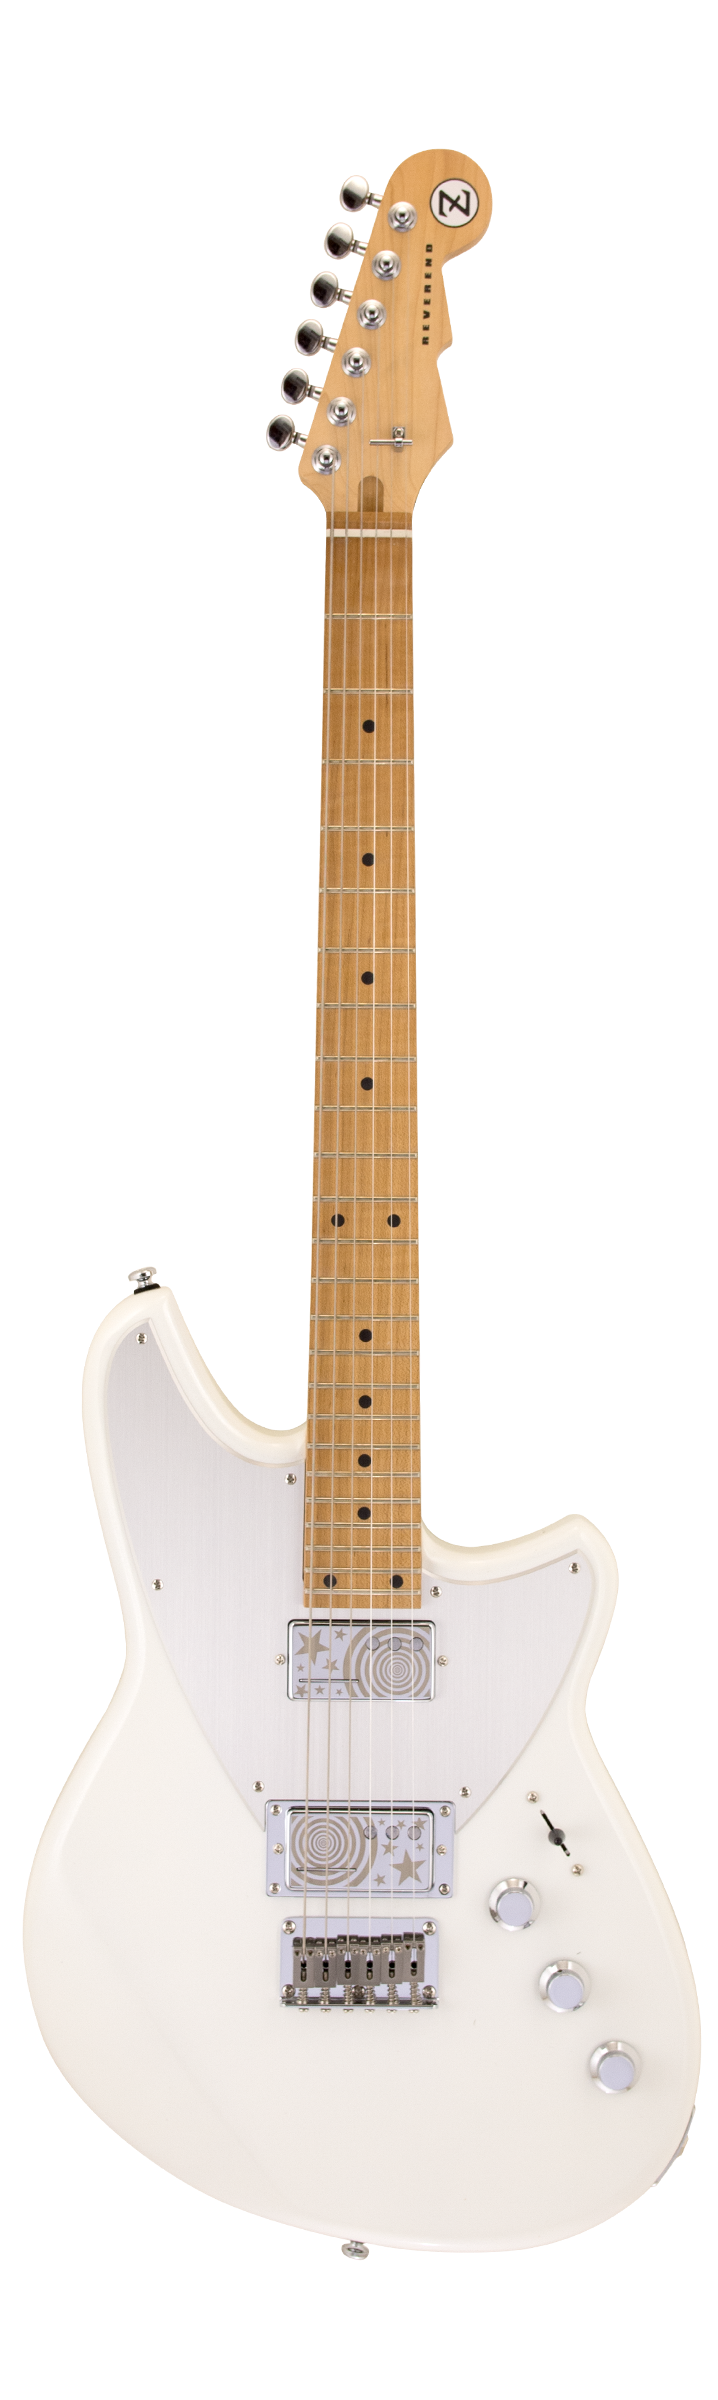 Révérend BILLY CORGAN DROP Z Signature Guitare électrique (Blanc perle)